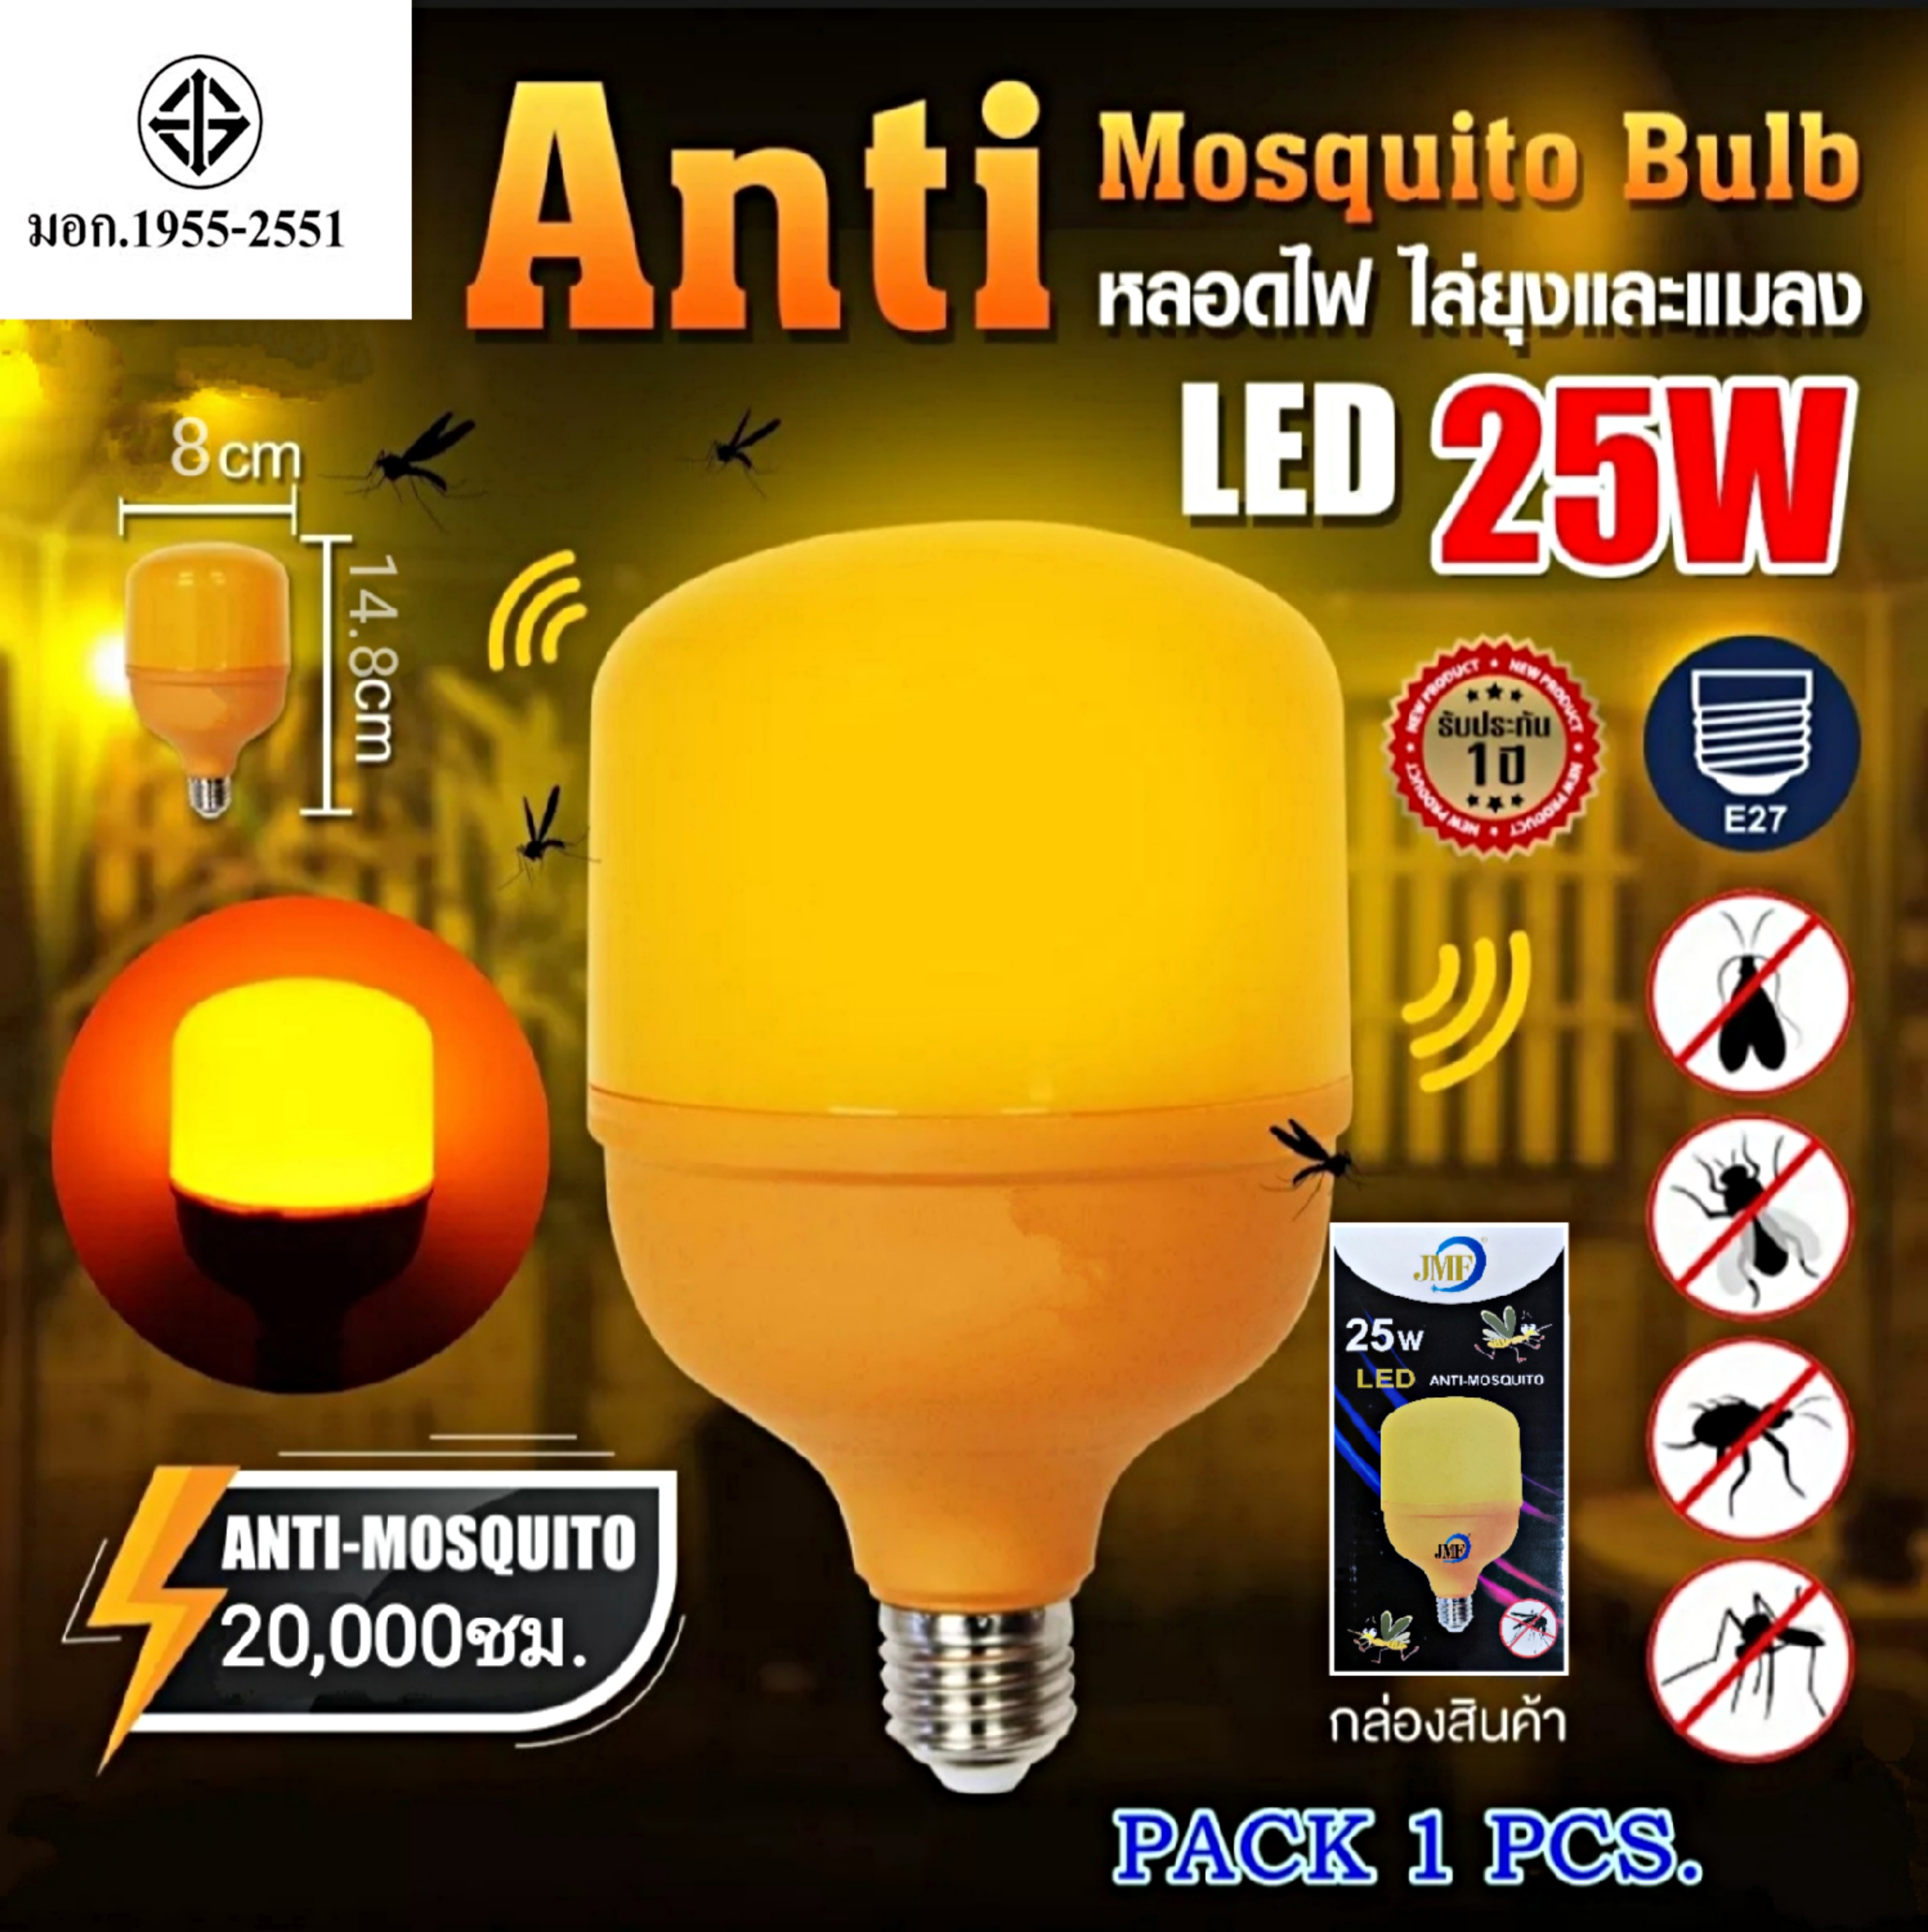 💡ส่งด่วน!! หลอดไฟ💡หลอดไฟ LED หลอดไล่ยุง ไล่แมลง ปีกอ่อน 8W 10W 25Wป้องกัน ฟาร์มสัตว์ ไก่ วัว LED High Watt Anti-Mosquito ขั้ว E27 หลอดแสงเหลืองส้ม ใช้ง